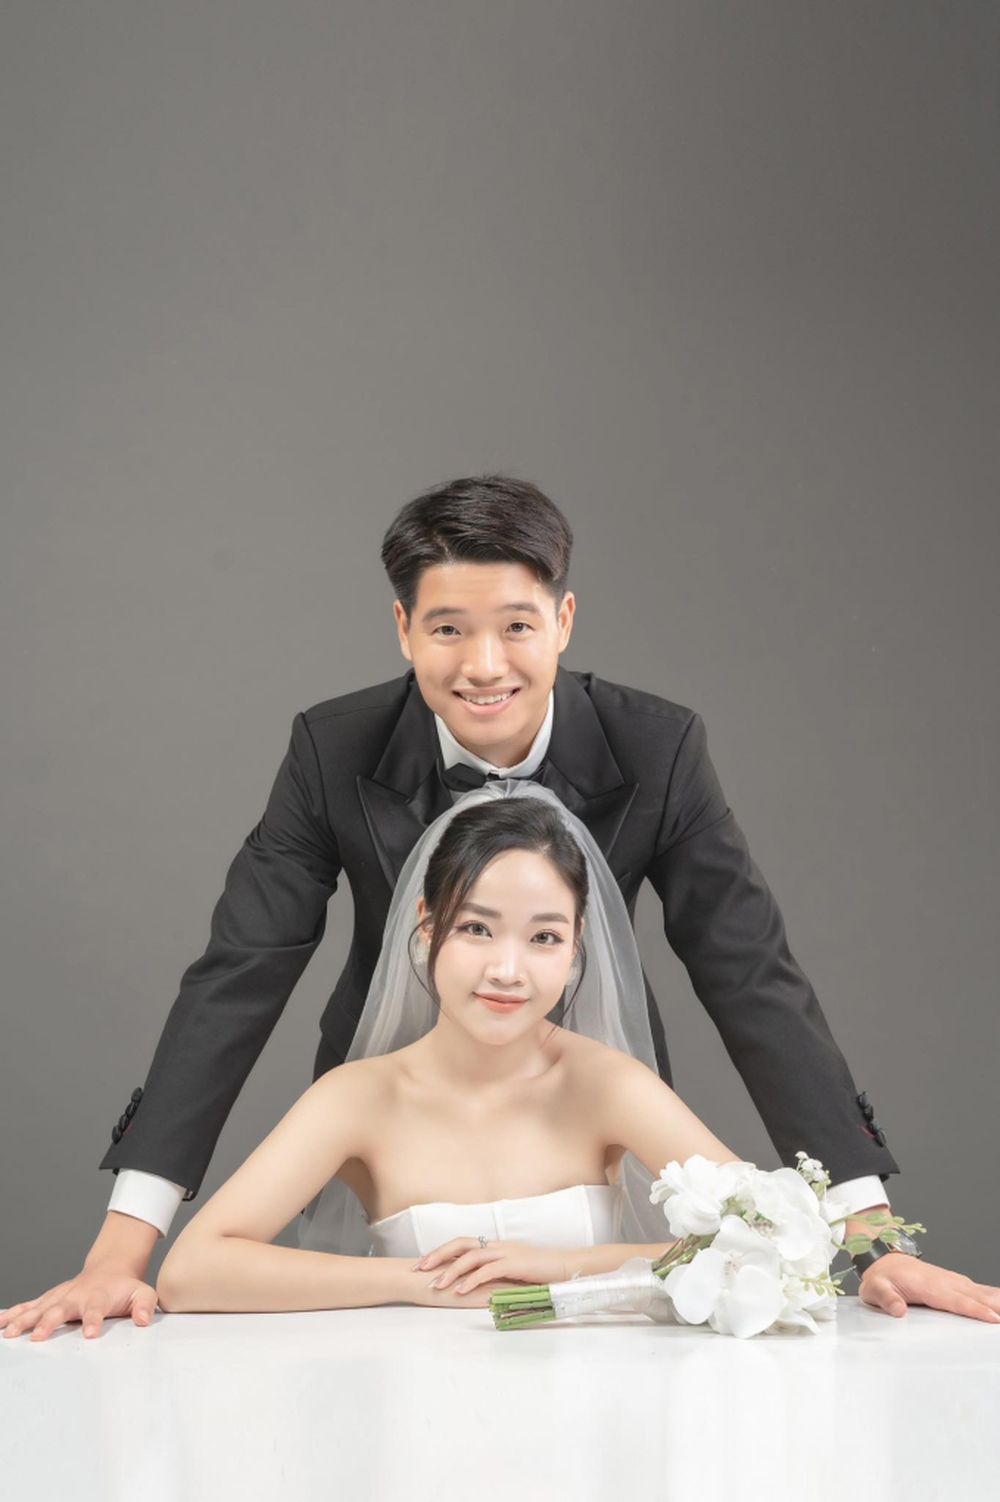 Thủ môn U23 Việt Nam nức tiếng một thời tung bộ ảnh cưới ngọt ngào với vợ làm giáo viên tiểu học - Ảnh 2.